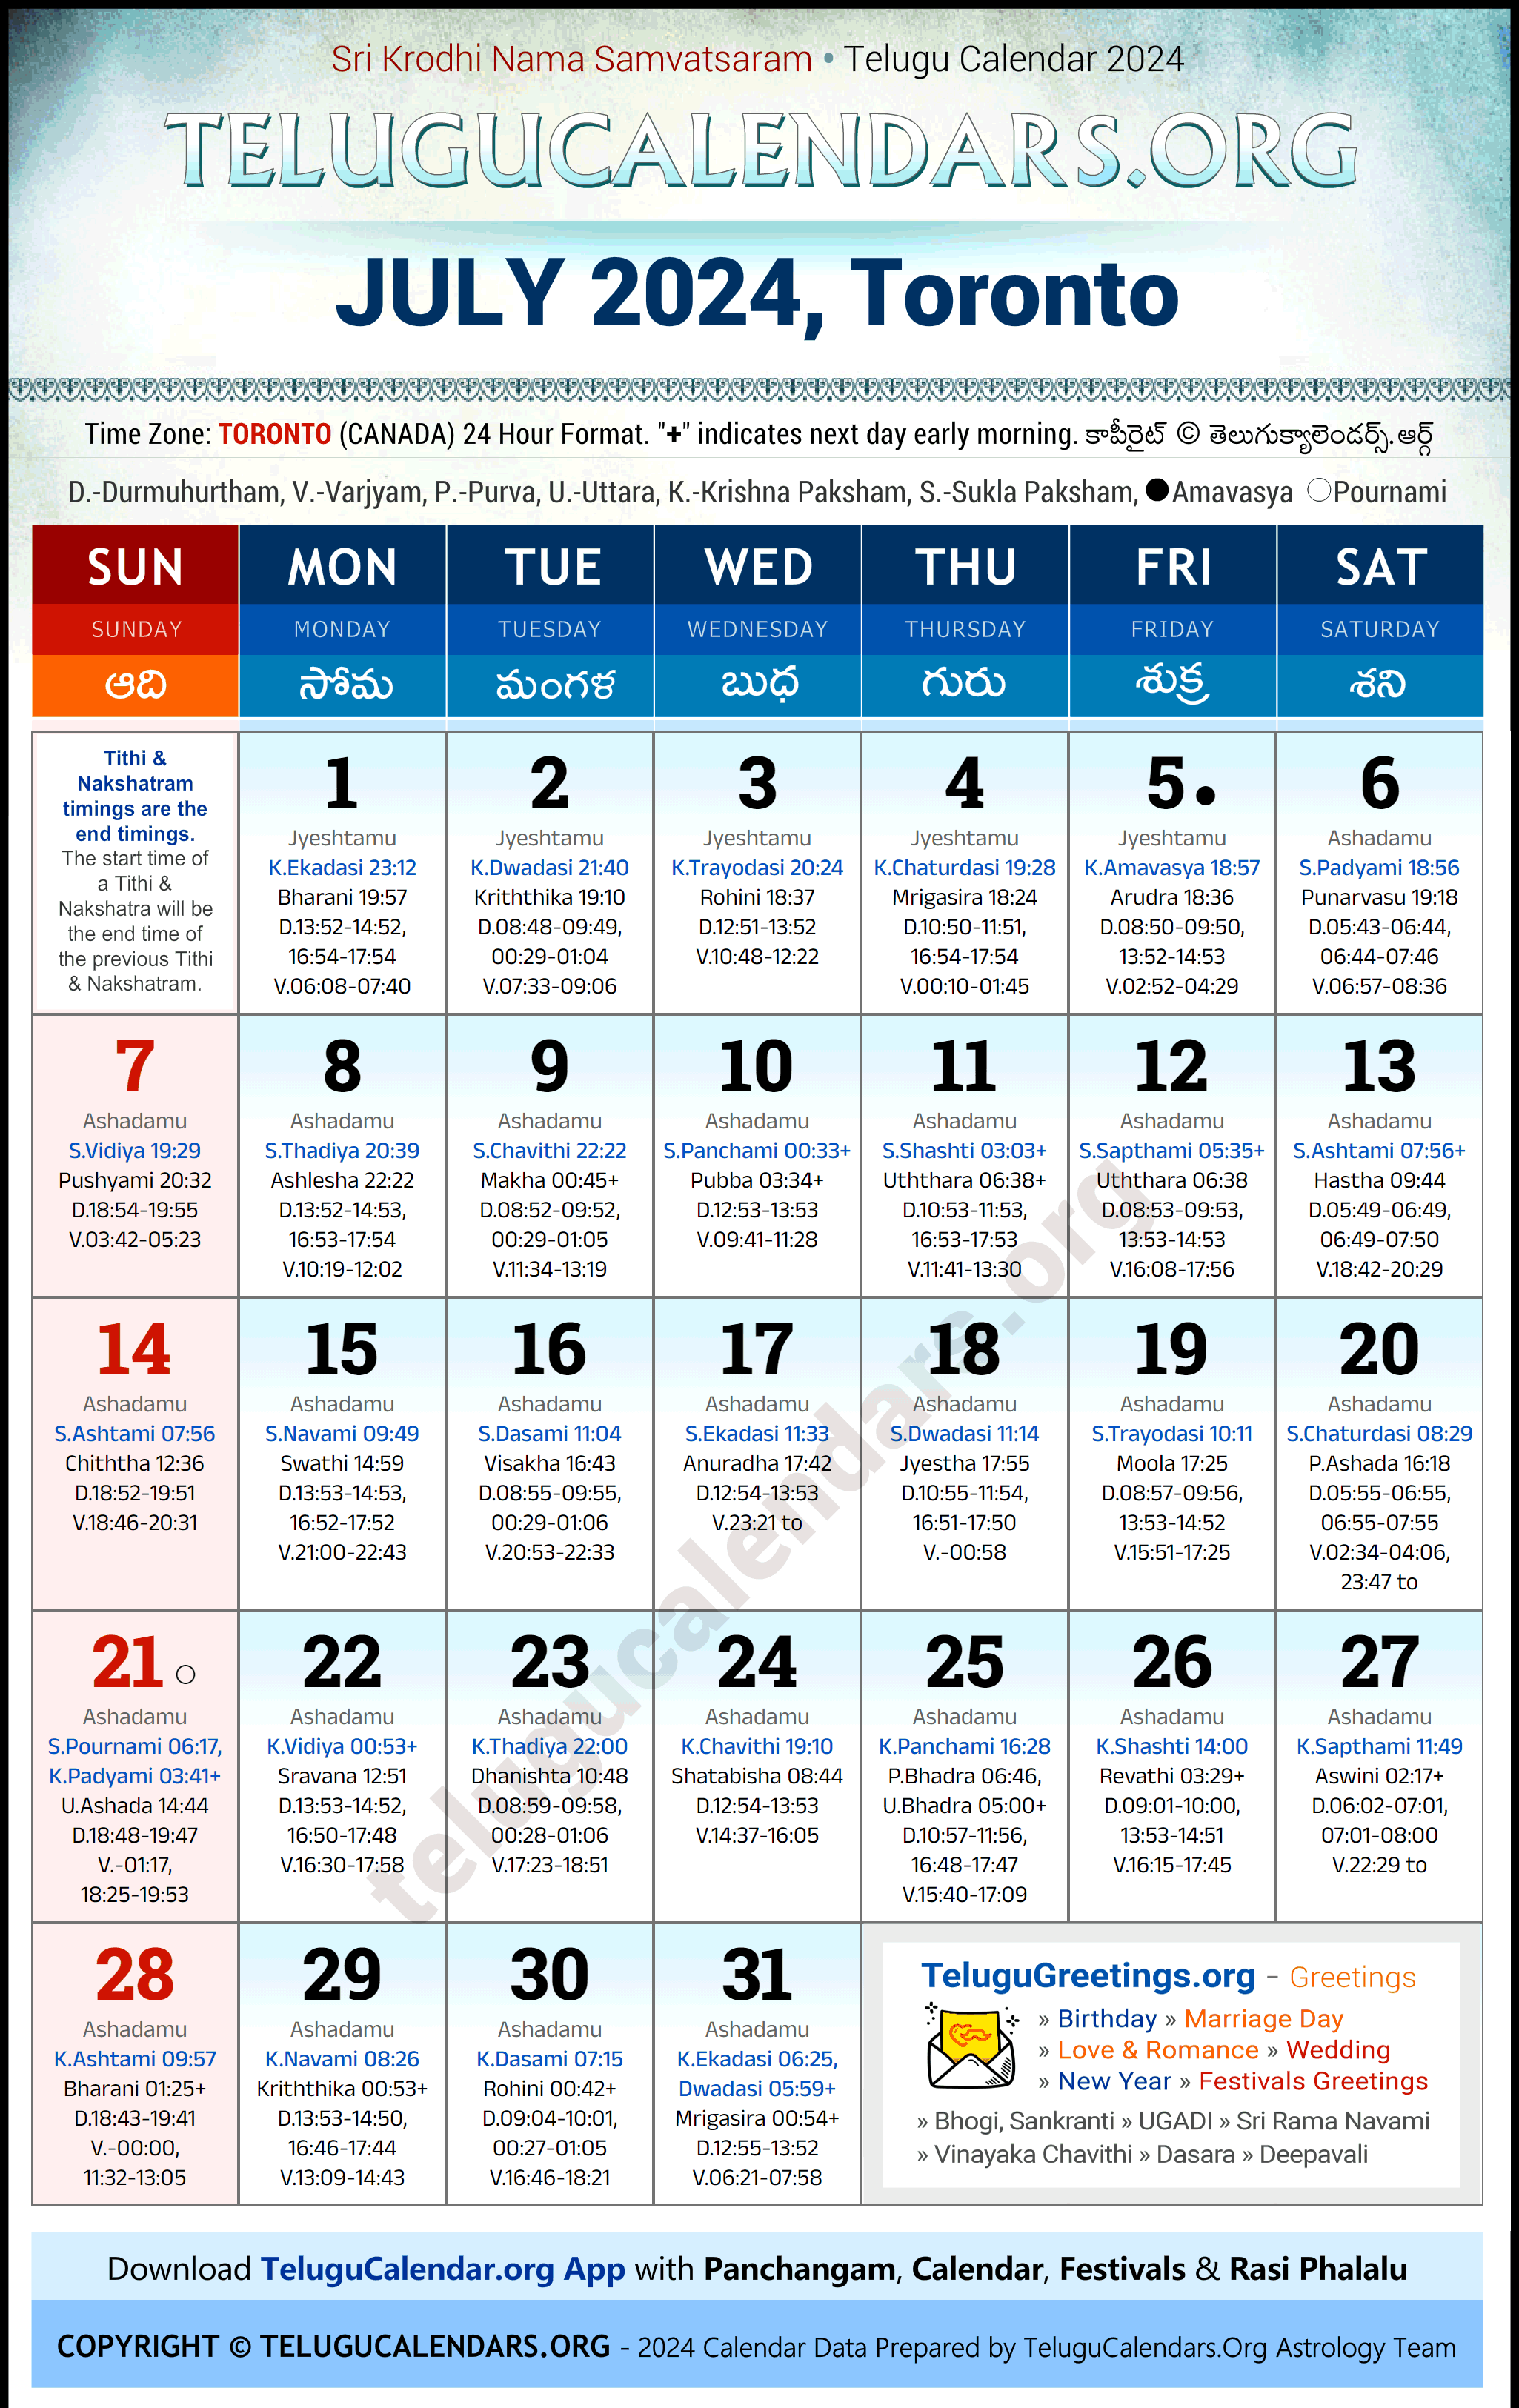 Telugu Calendar 2024 July Festivals for Toronto